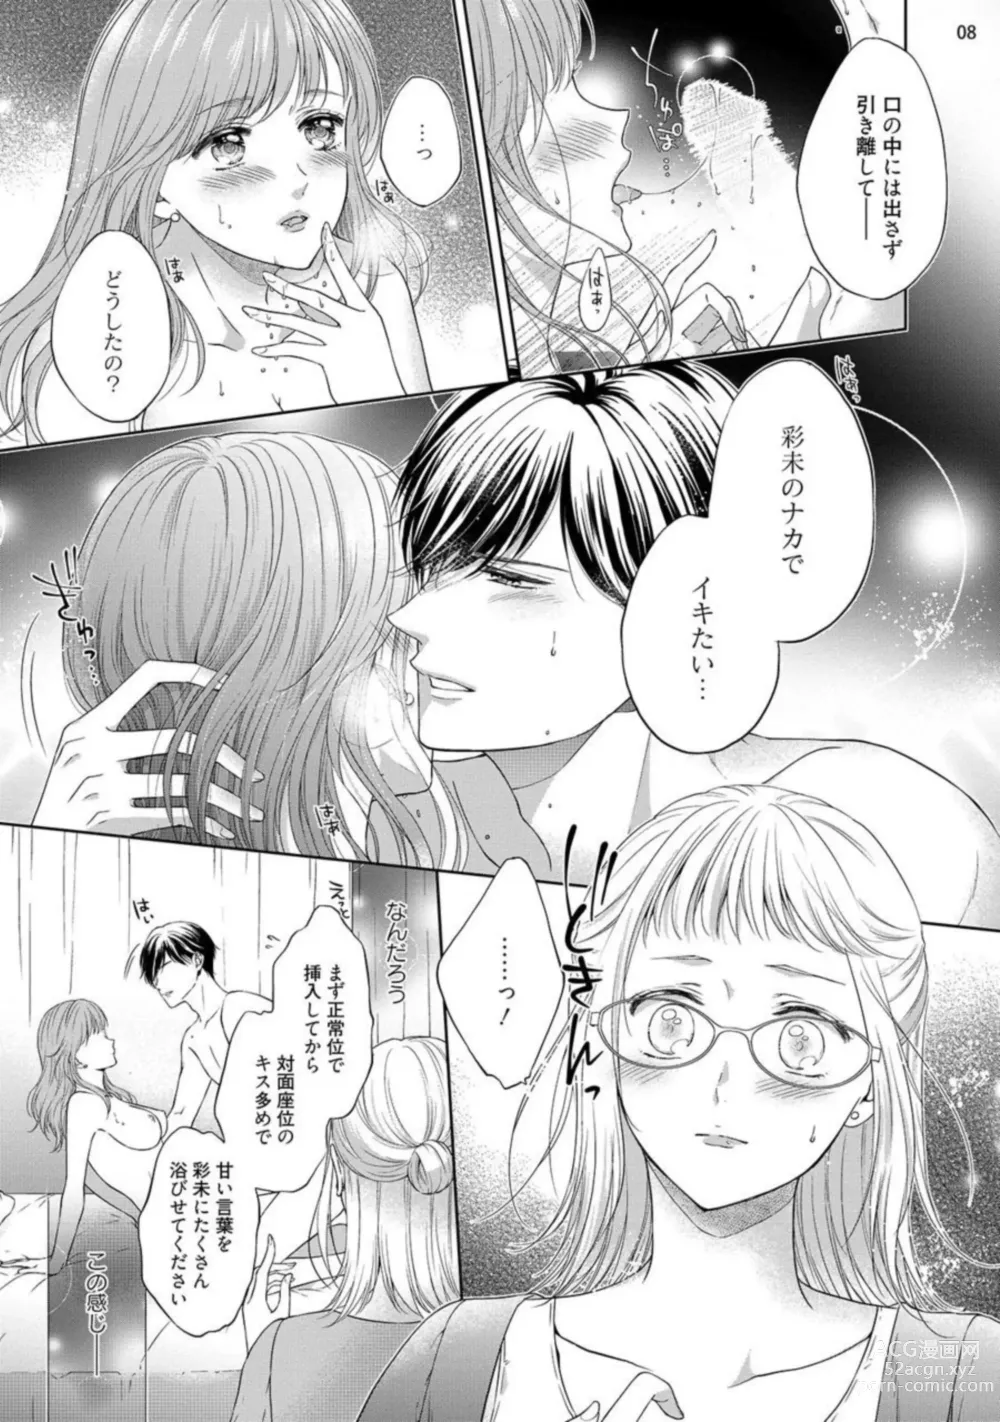 Page 9 of manga Erotikkufirumu Shojo Kantoku wa Sekushī Danyū no Gokujō Teku ni Nurete 3